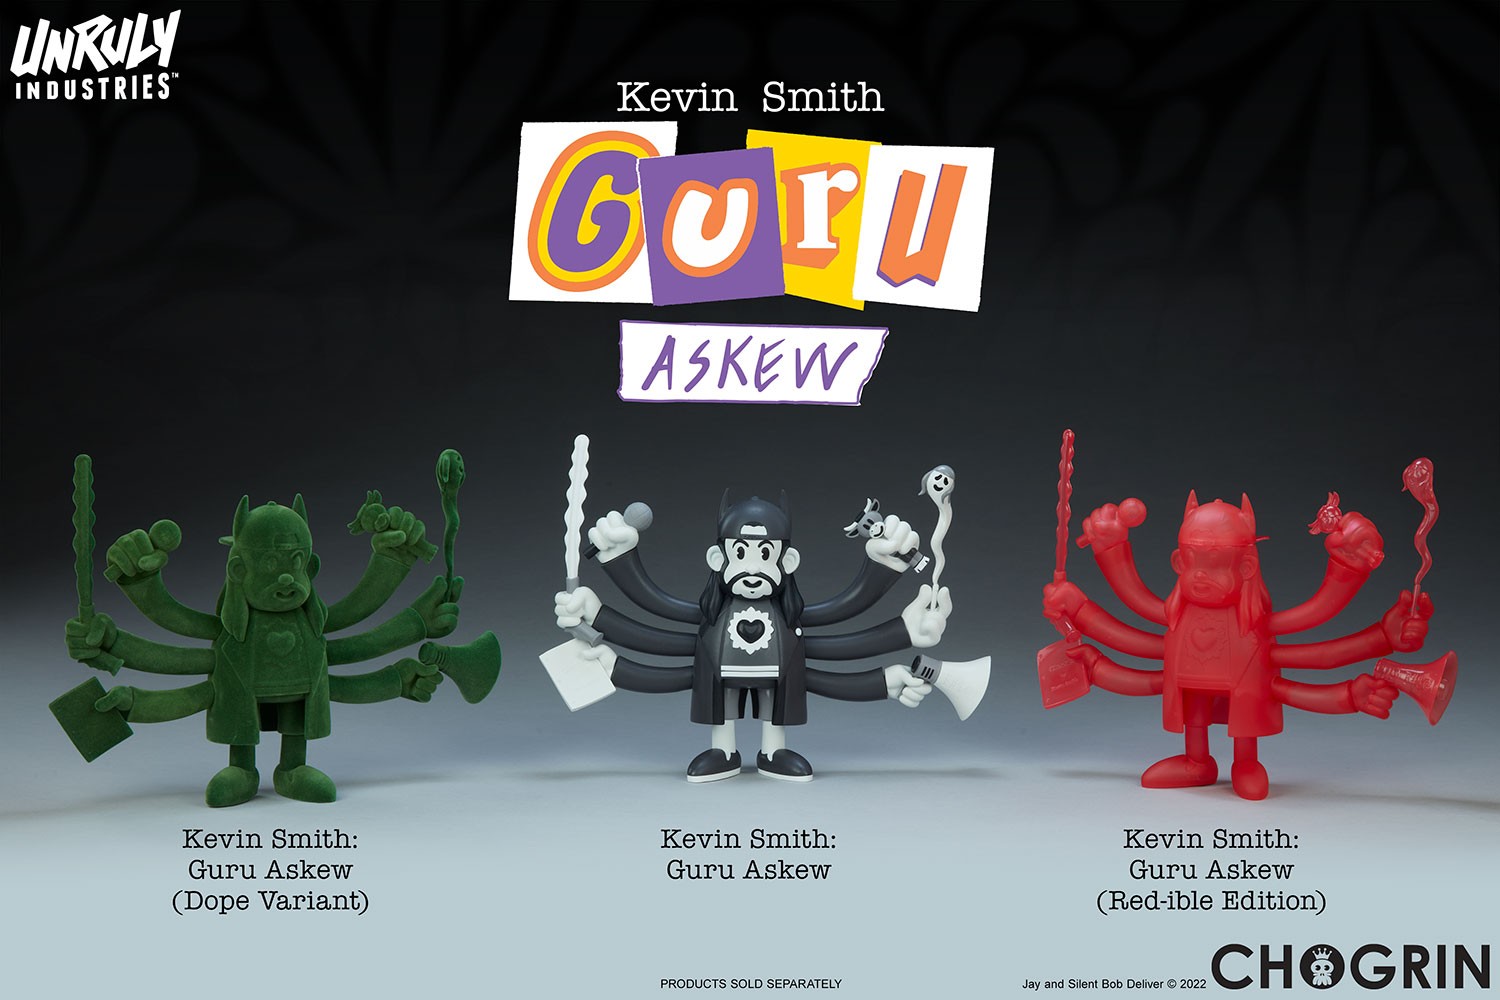 Kevin Smith: Guru Askew